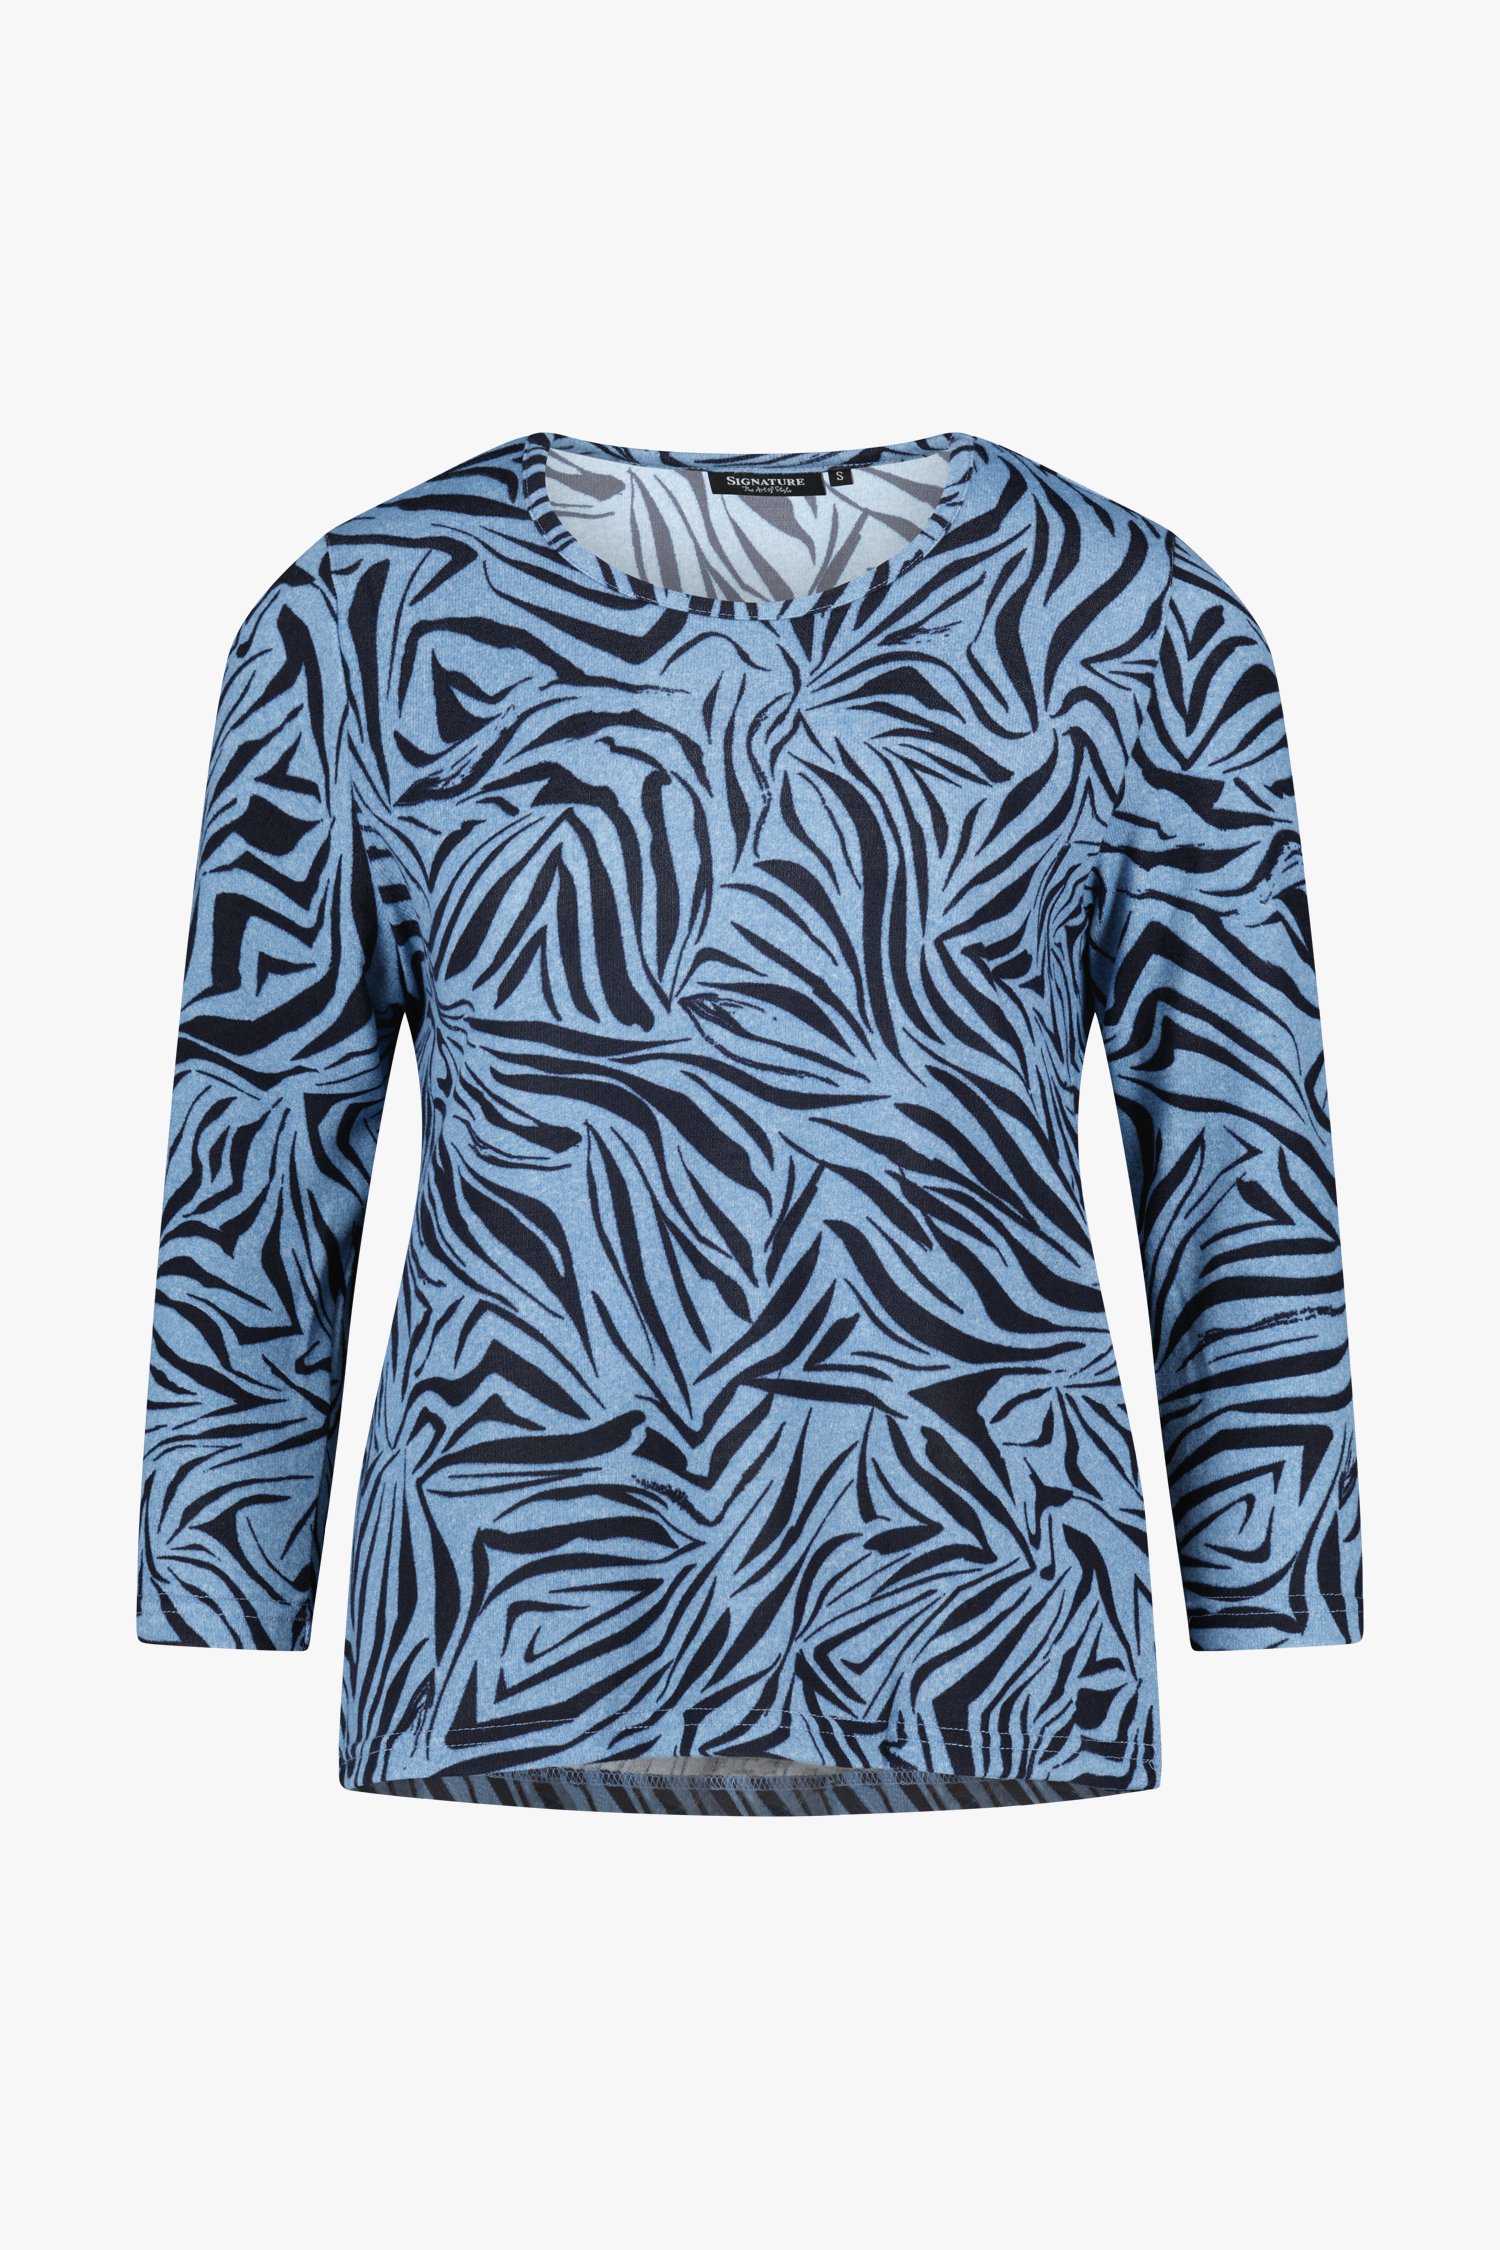 Blauw T-shirt met dierenprint van Signature voor Dames